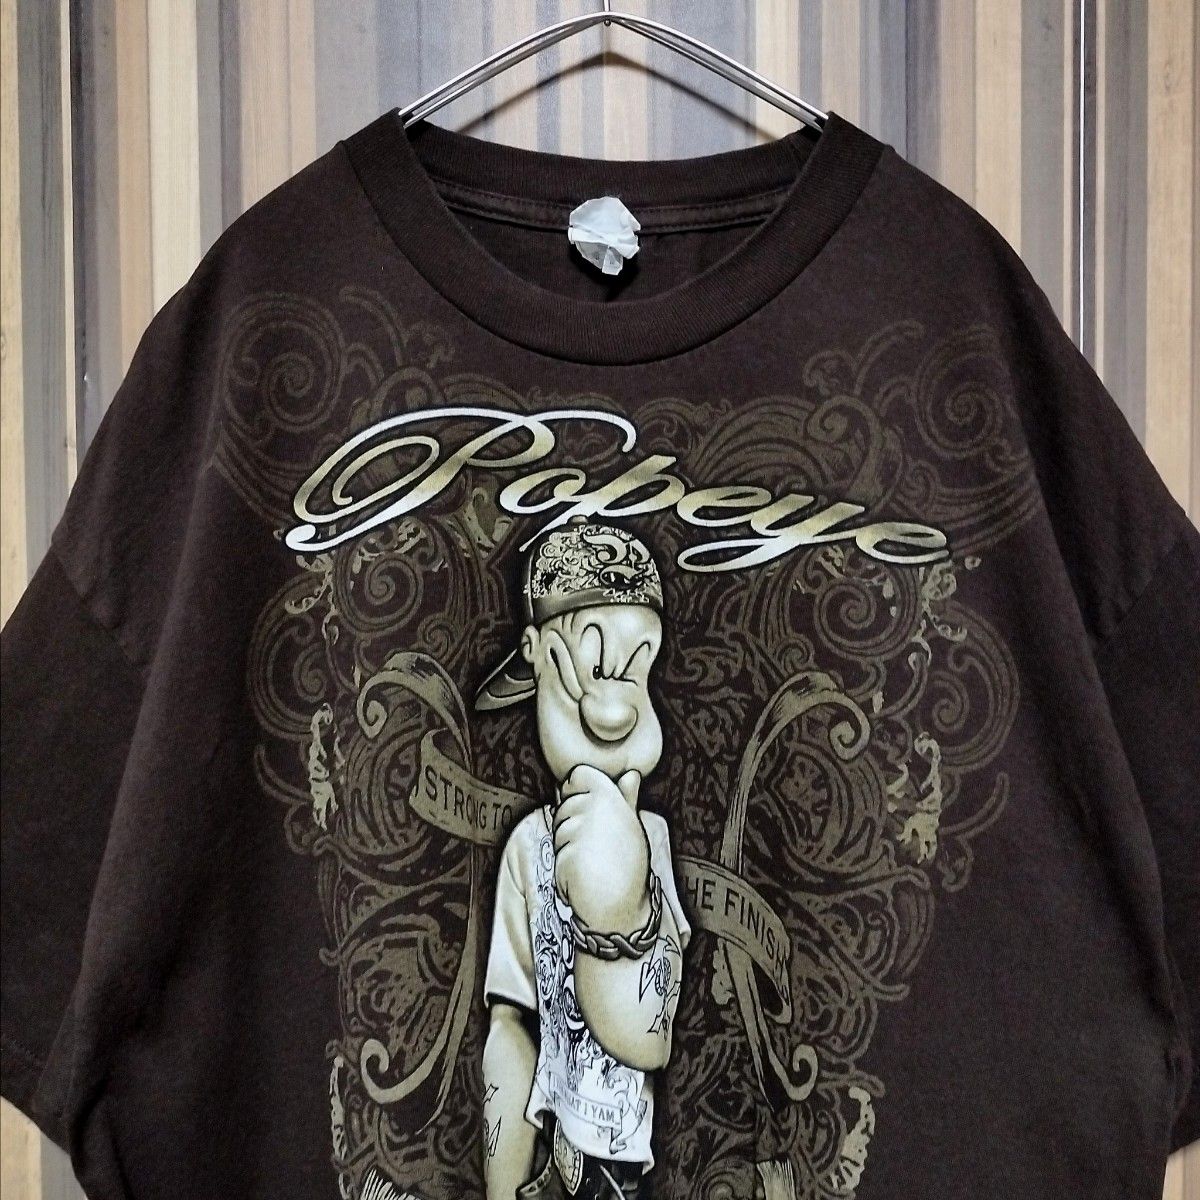 【POPEYE】ポパイ 2010 コピーライト アニメ キャラクター プリント メキシコ製 半袖Tシャツ XL